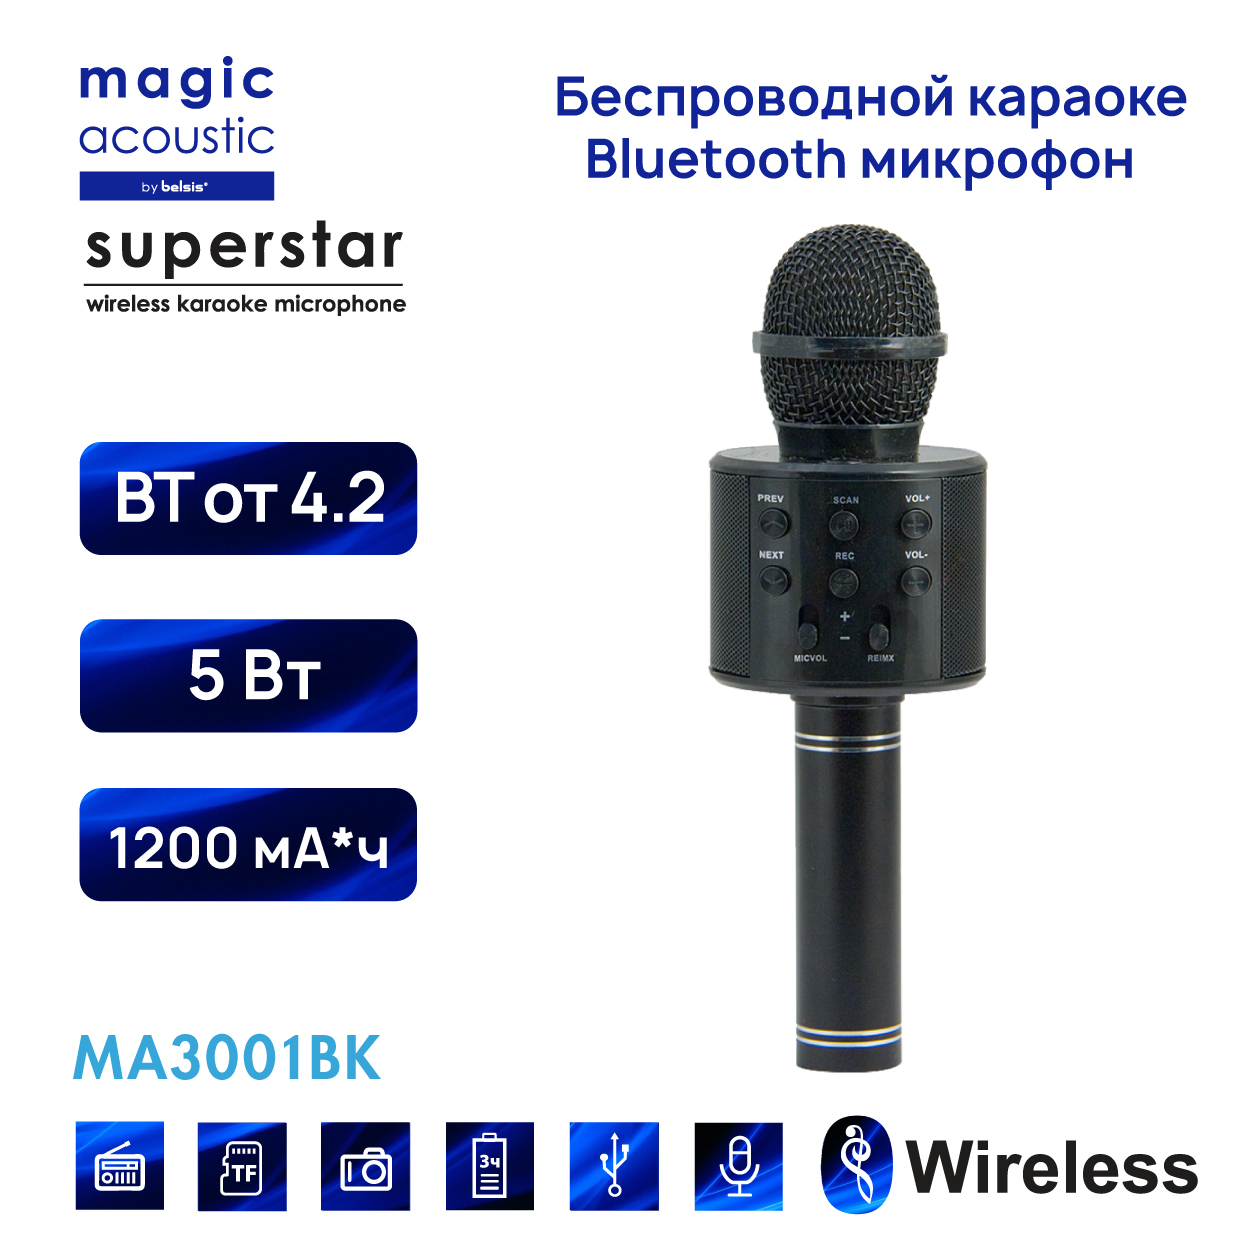 Bluetooth magic. Микрофон Magic Acoustic Superstar. Блютуз микрофон караоке звезда караоке. Микрофон беспроводной ма3001. Микрофон для караоке беспроводной с блютуз.